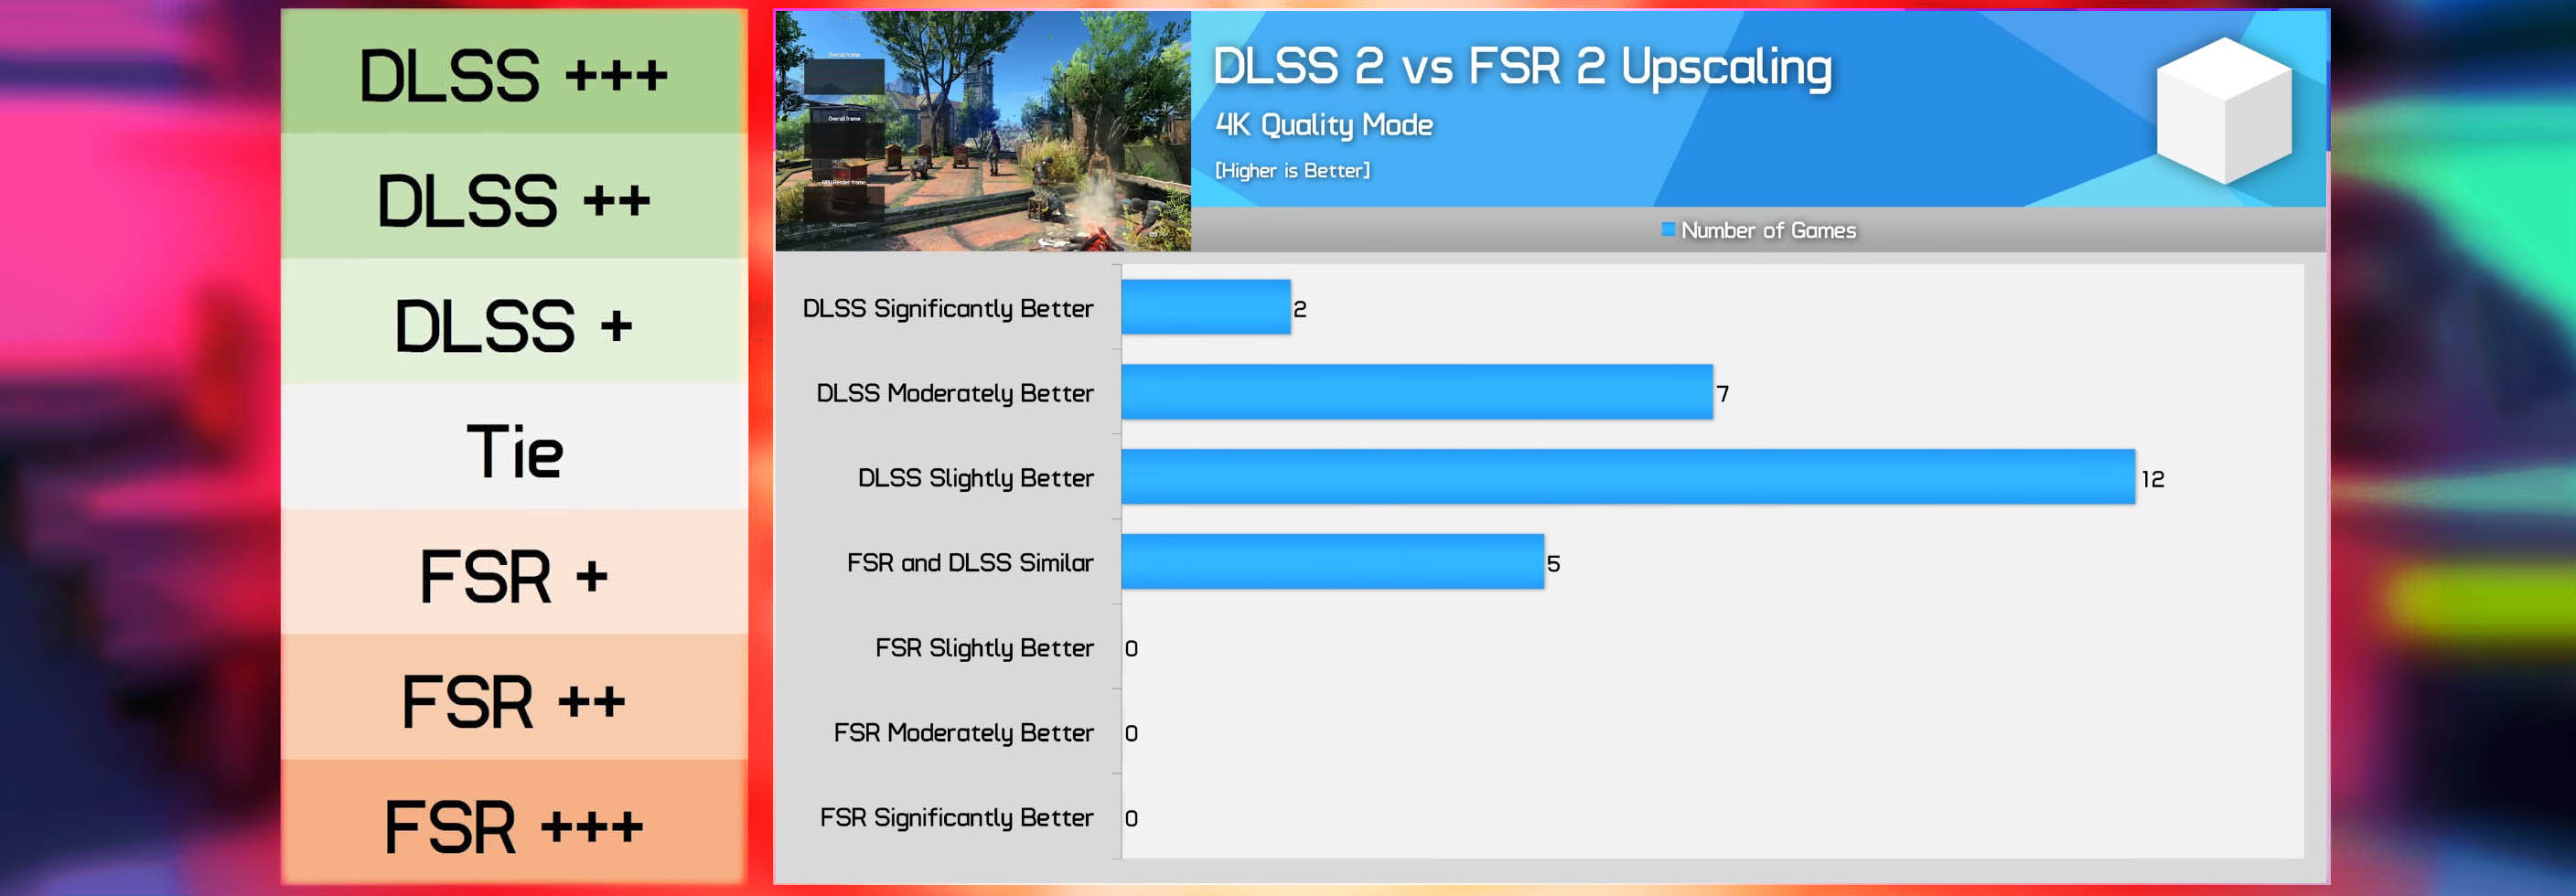 مقایسه فناوری DLSS و FSR 